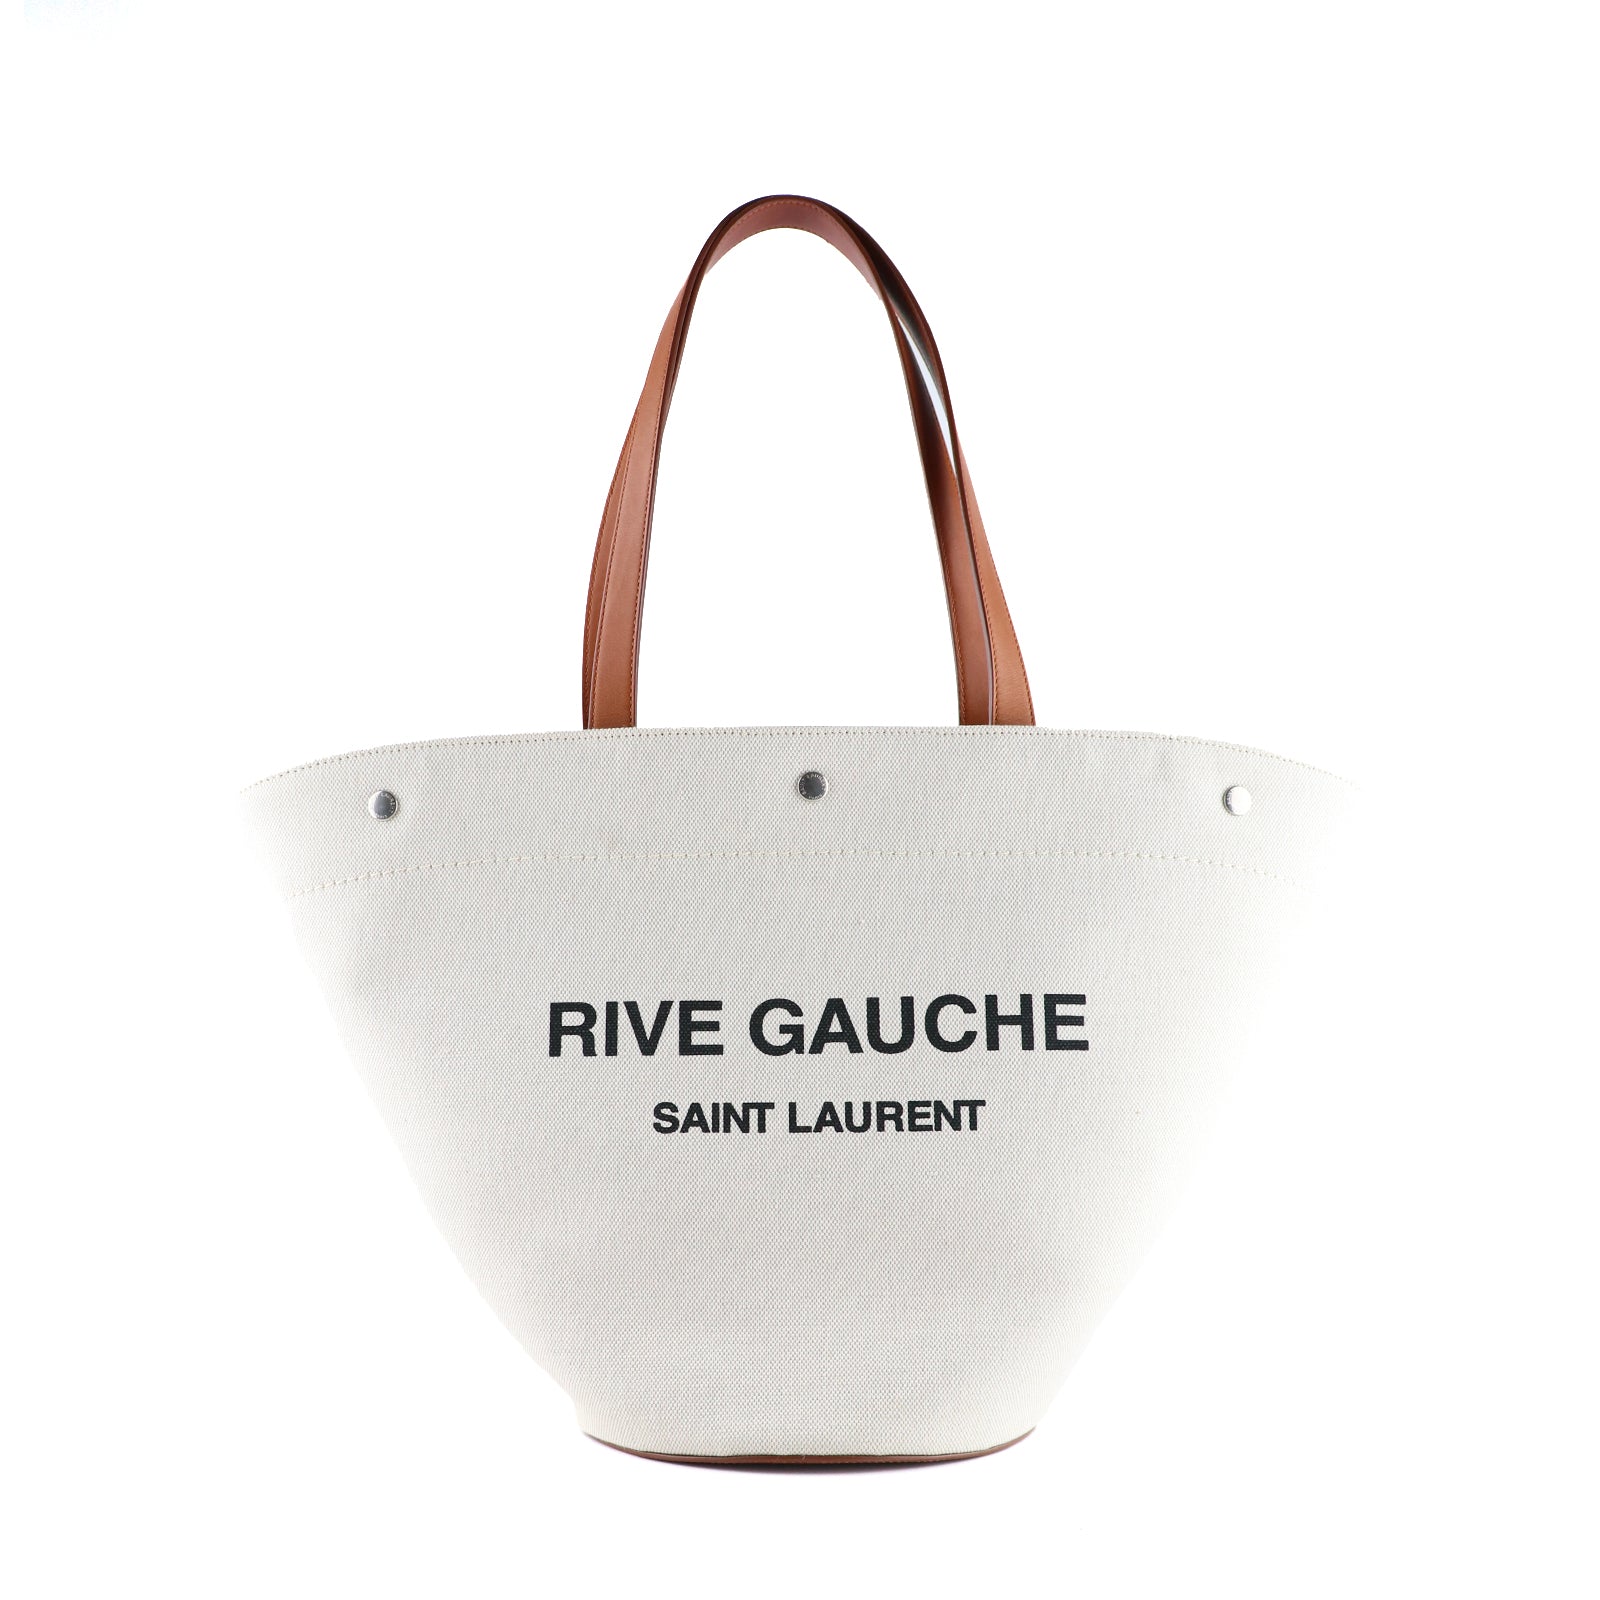 SAINT LAURENT - Sac cabas Rive Gauche Shopping en toile et cuir